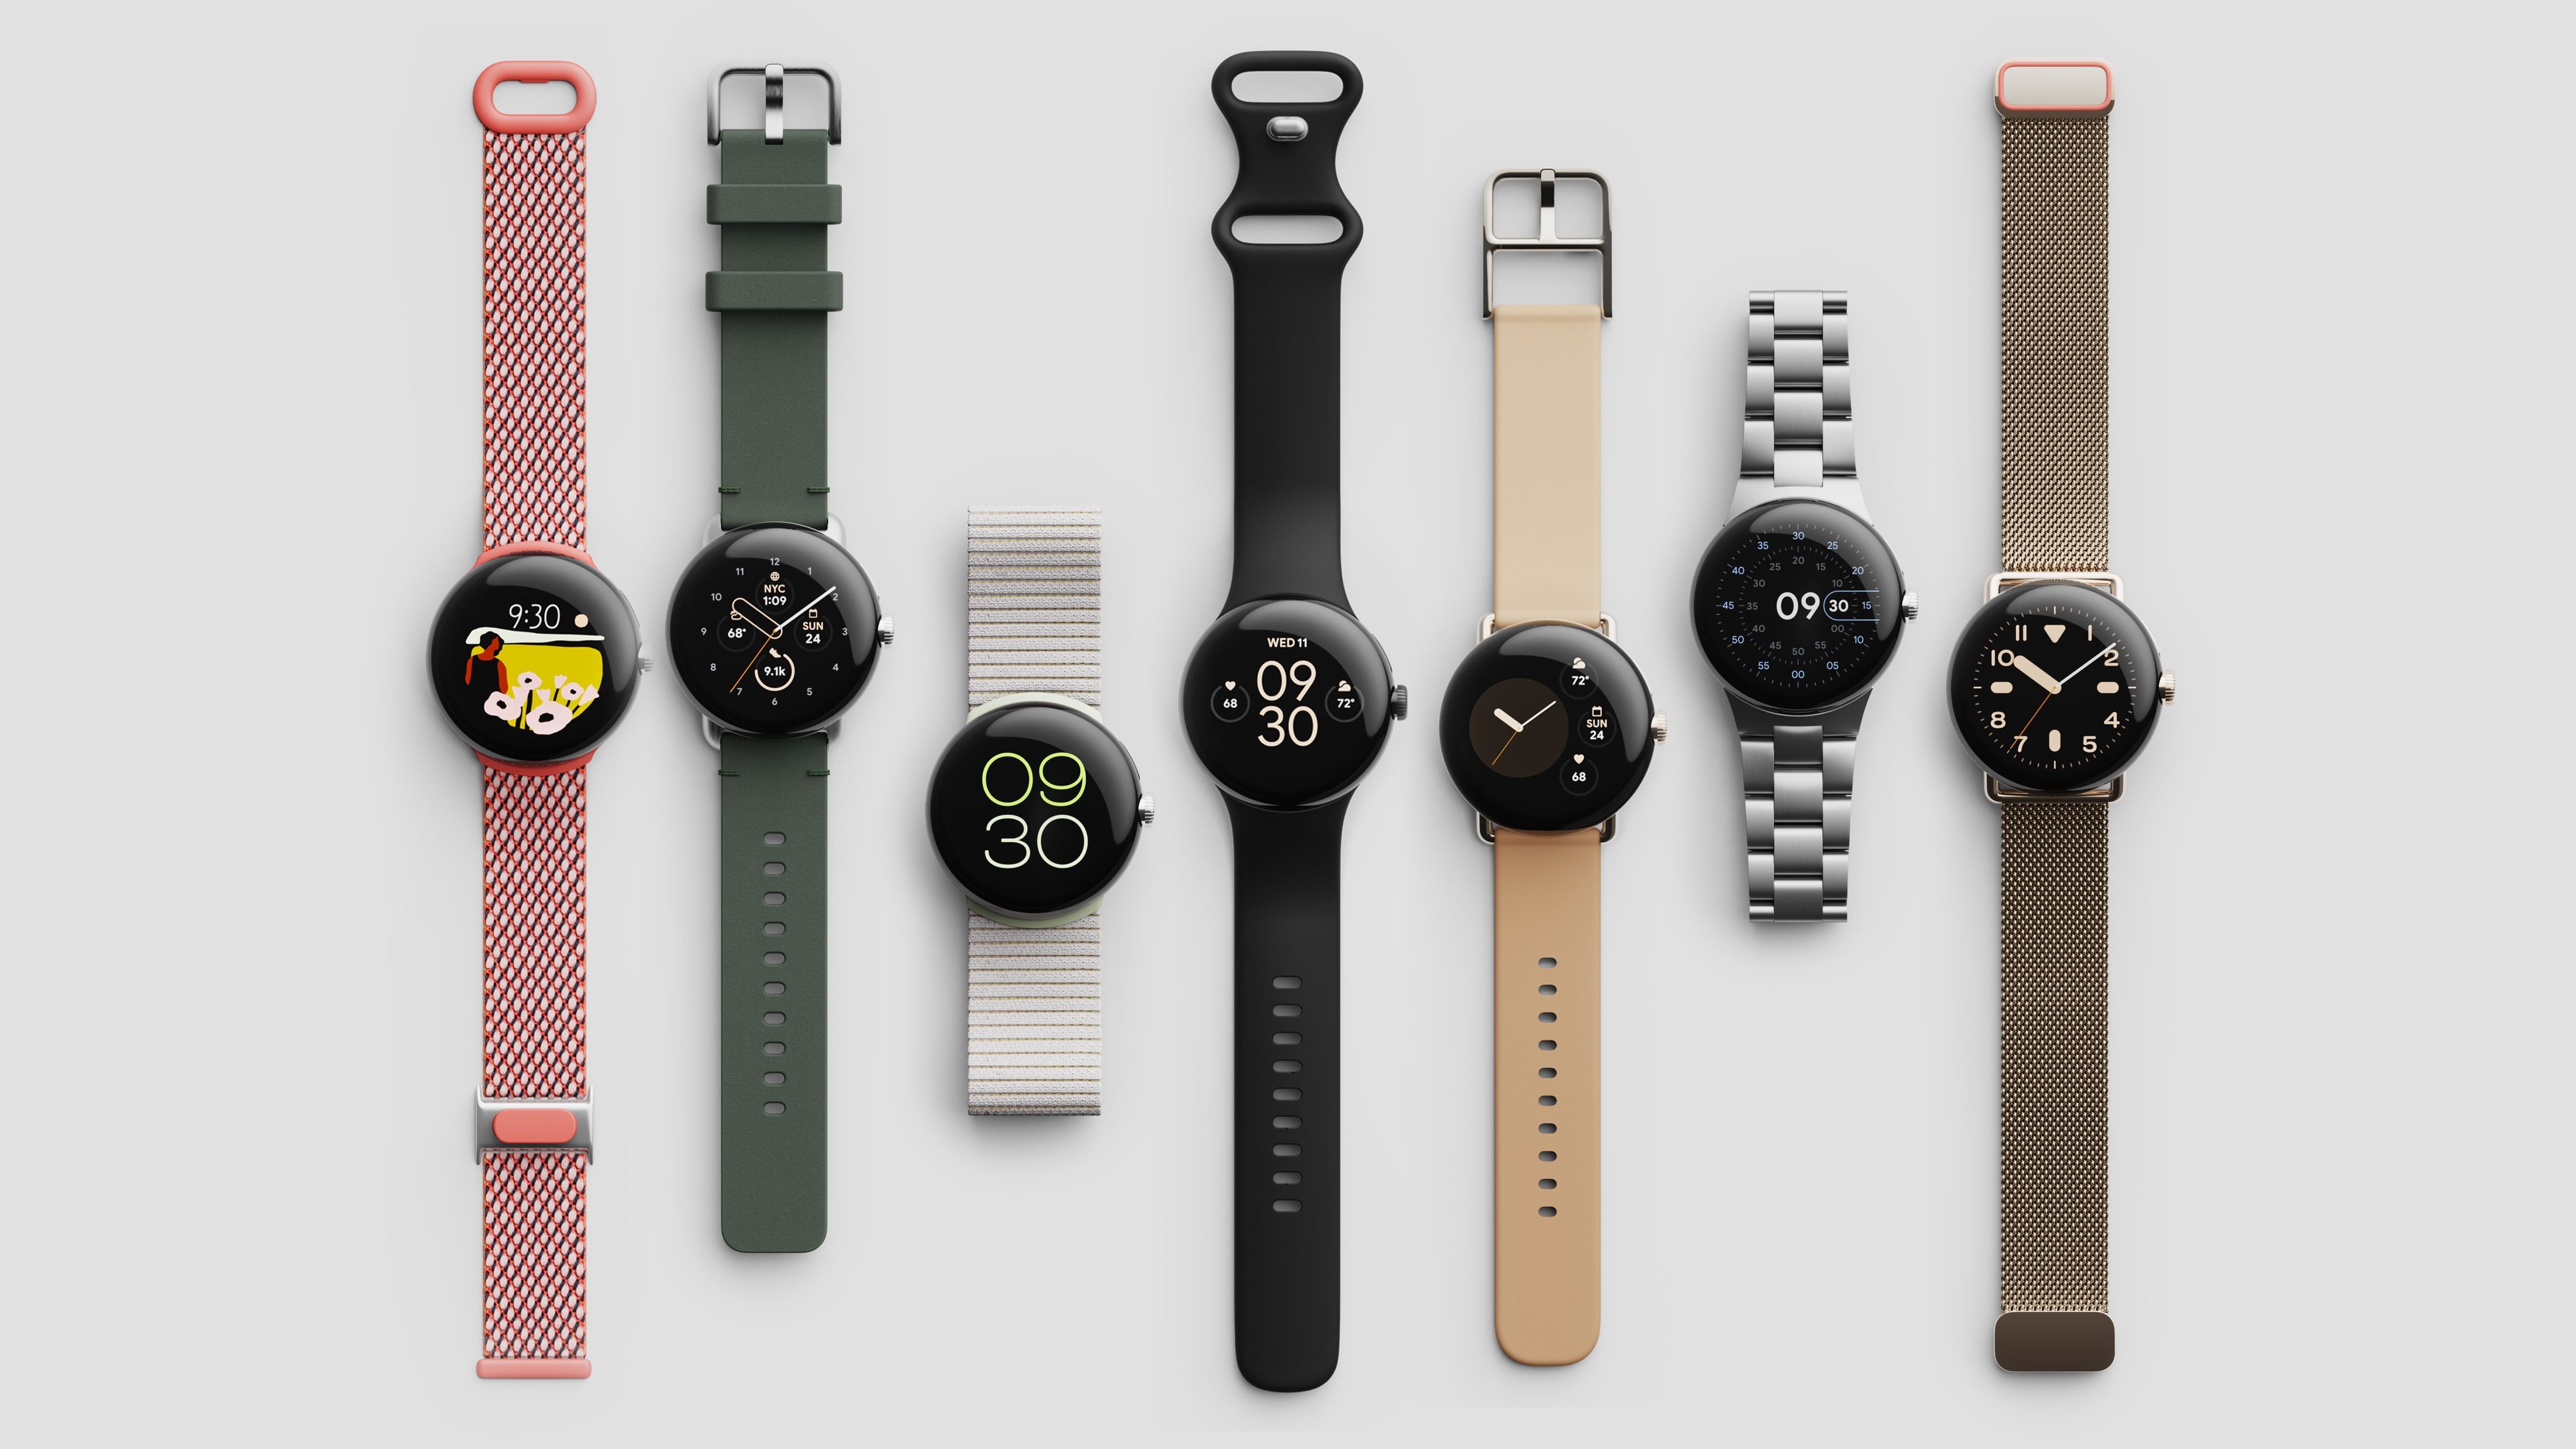 De Pixel Watch 2 smartwatch is opgedoken in de FCC-database met vier bandvarianten